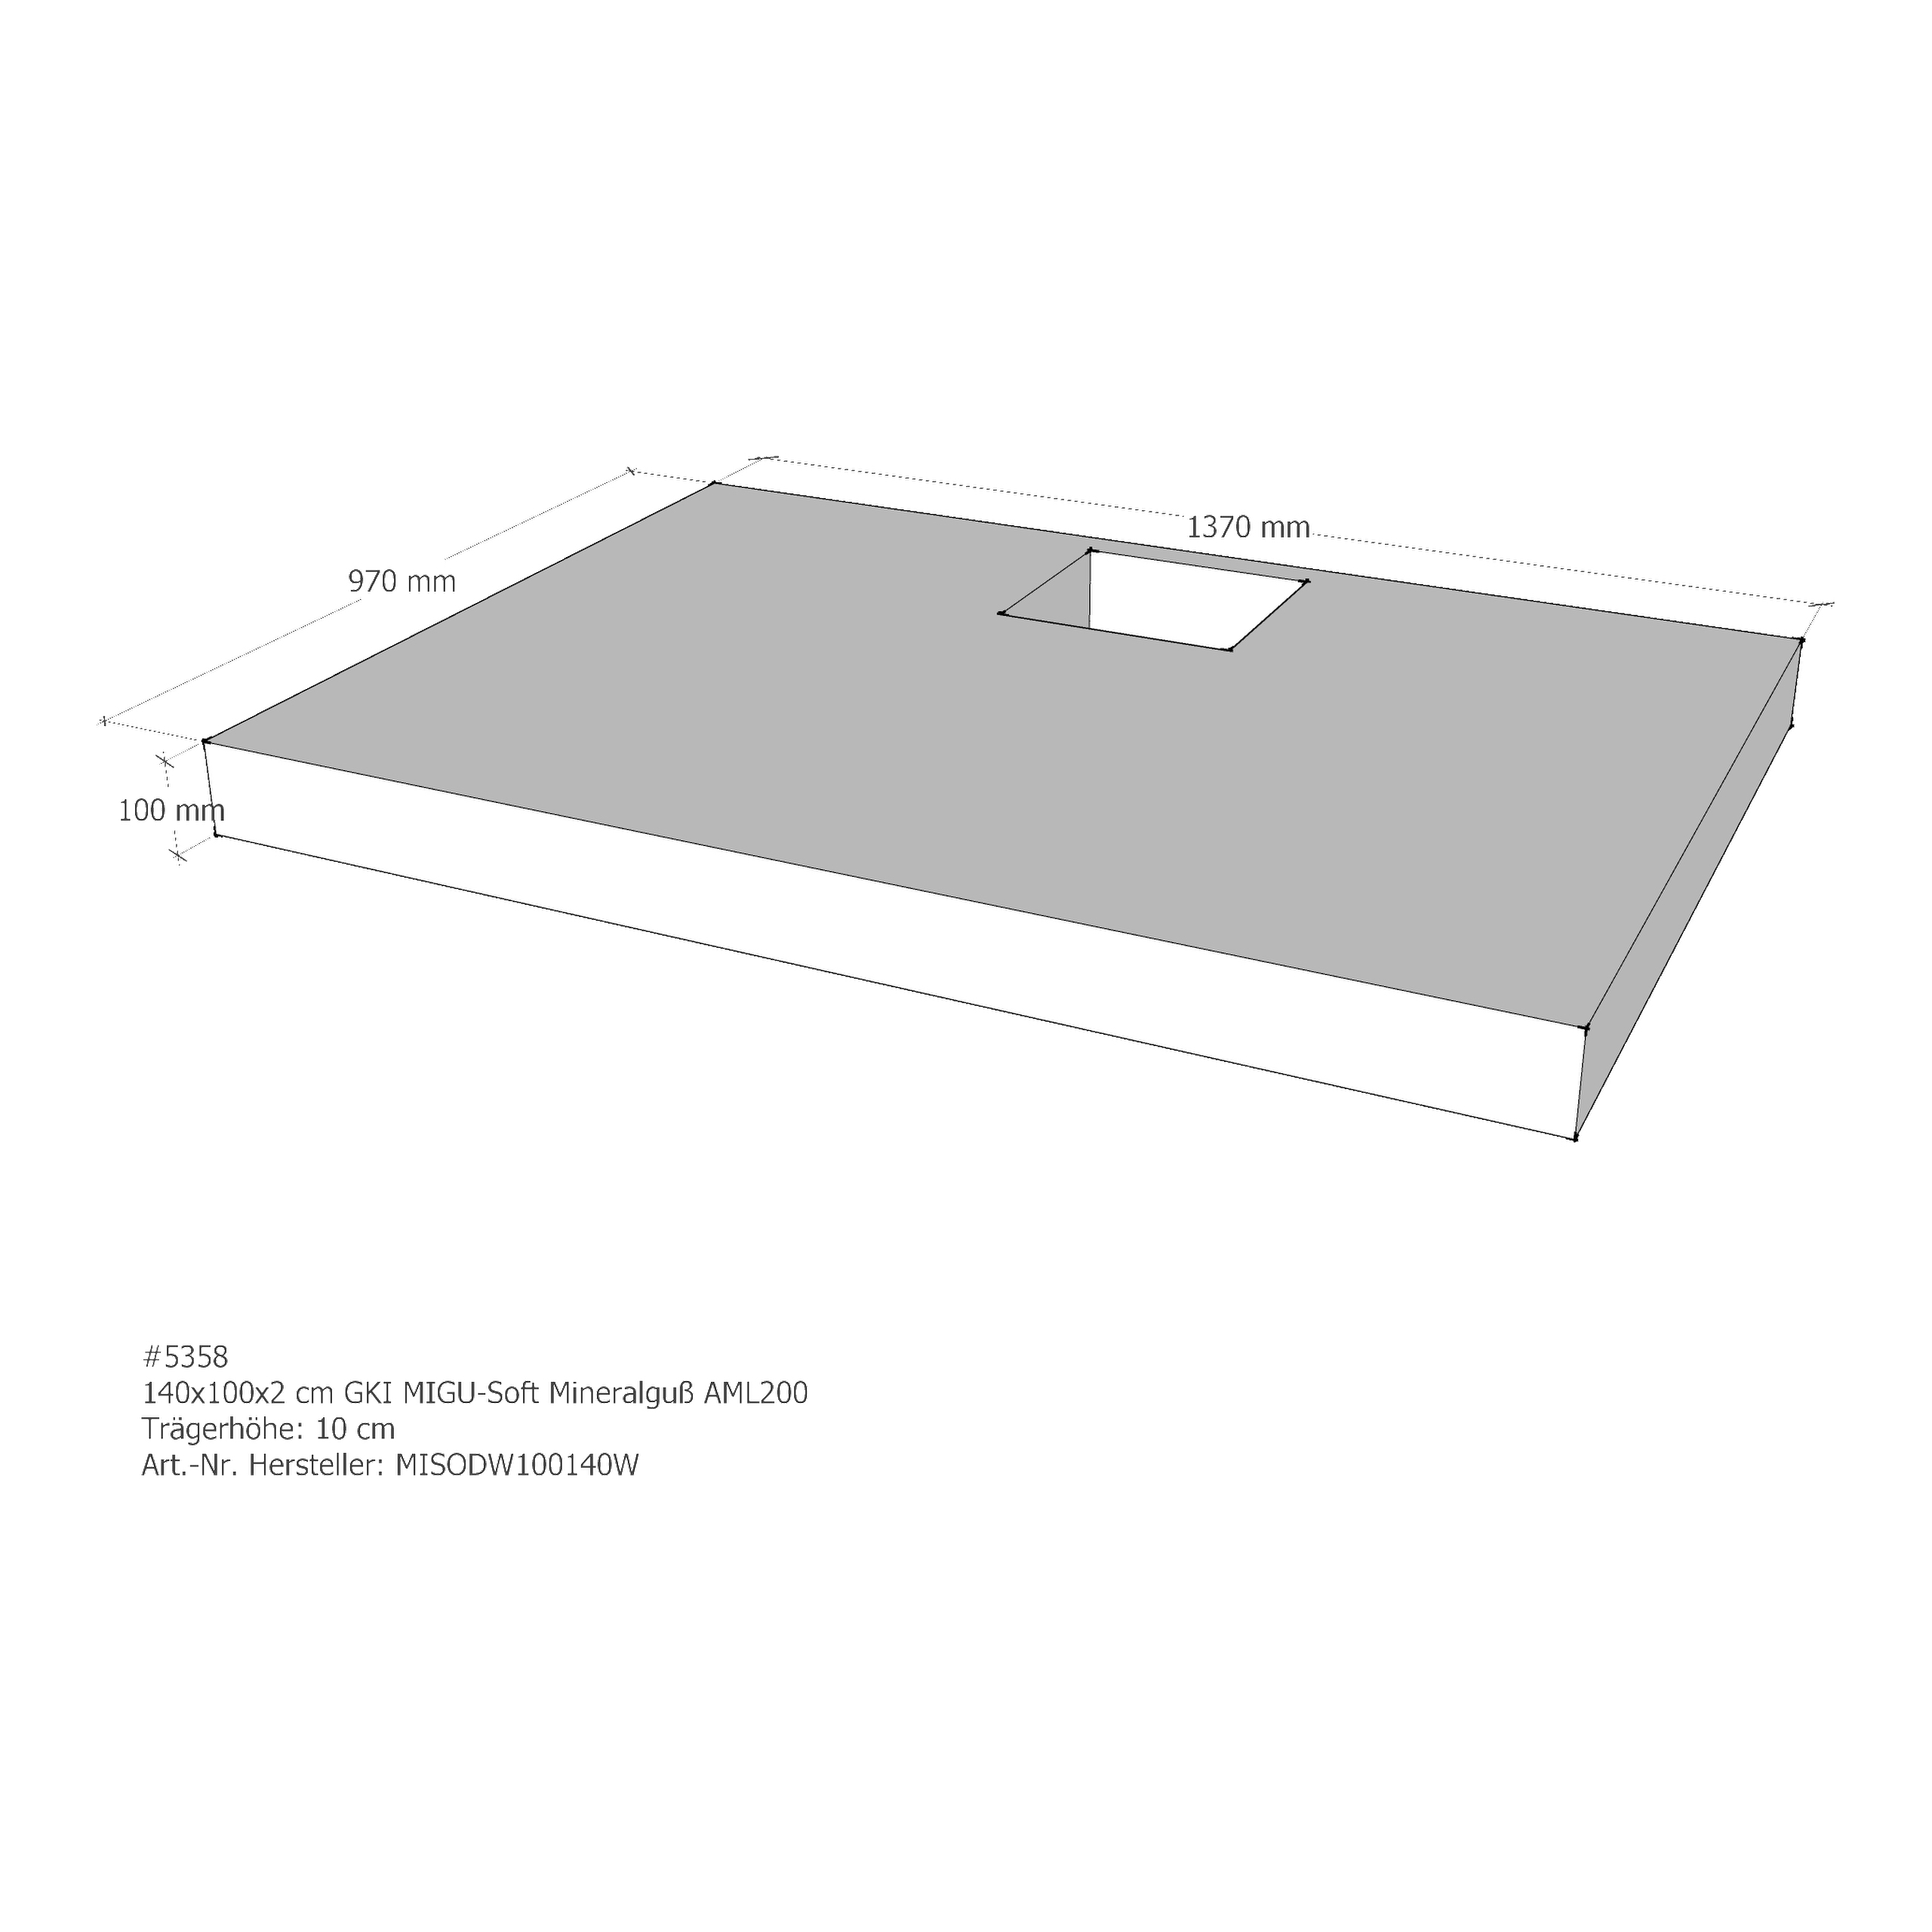 Duschwannenträger für GKI MIGU-Soft Mineralguß 140 × 100 × 2 cm